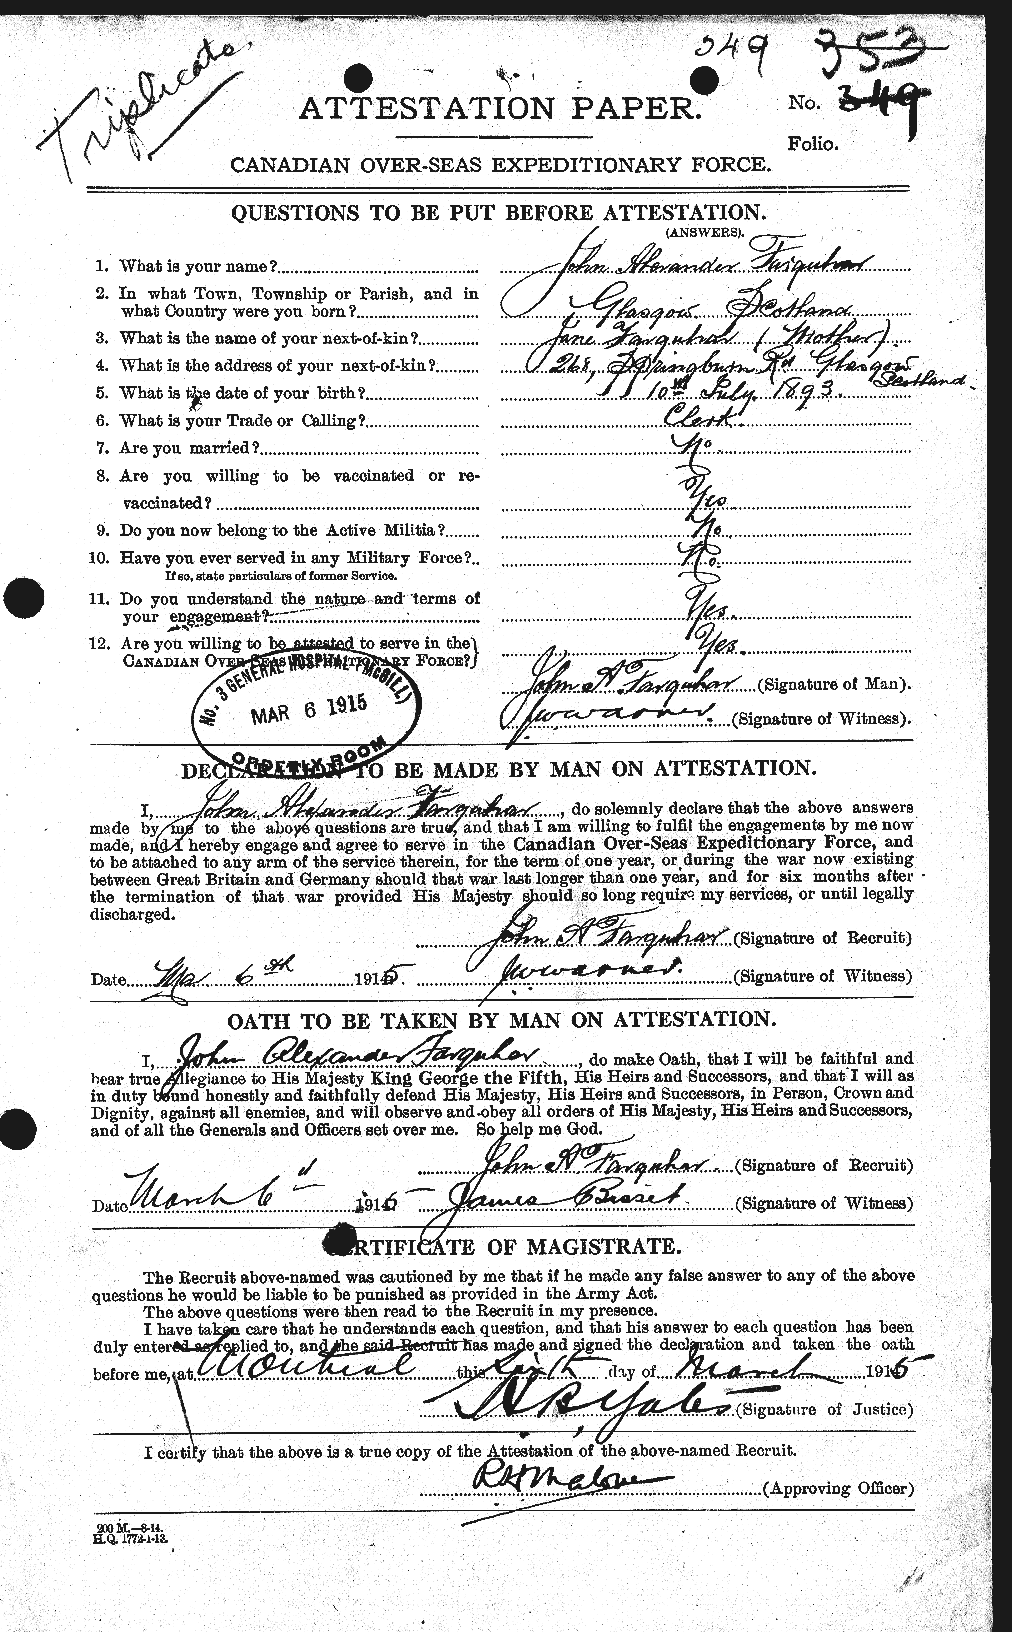 Dossiers du Personnel de la Première Guerre mondiale - CEC 318780a